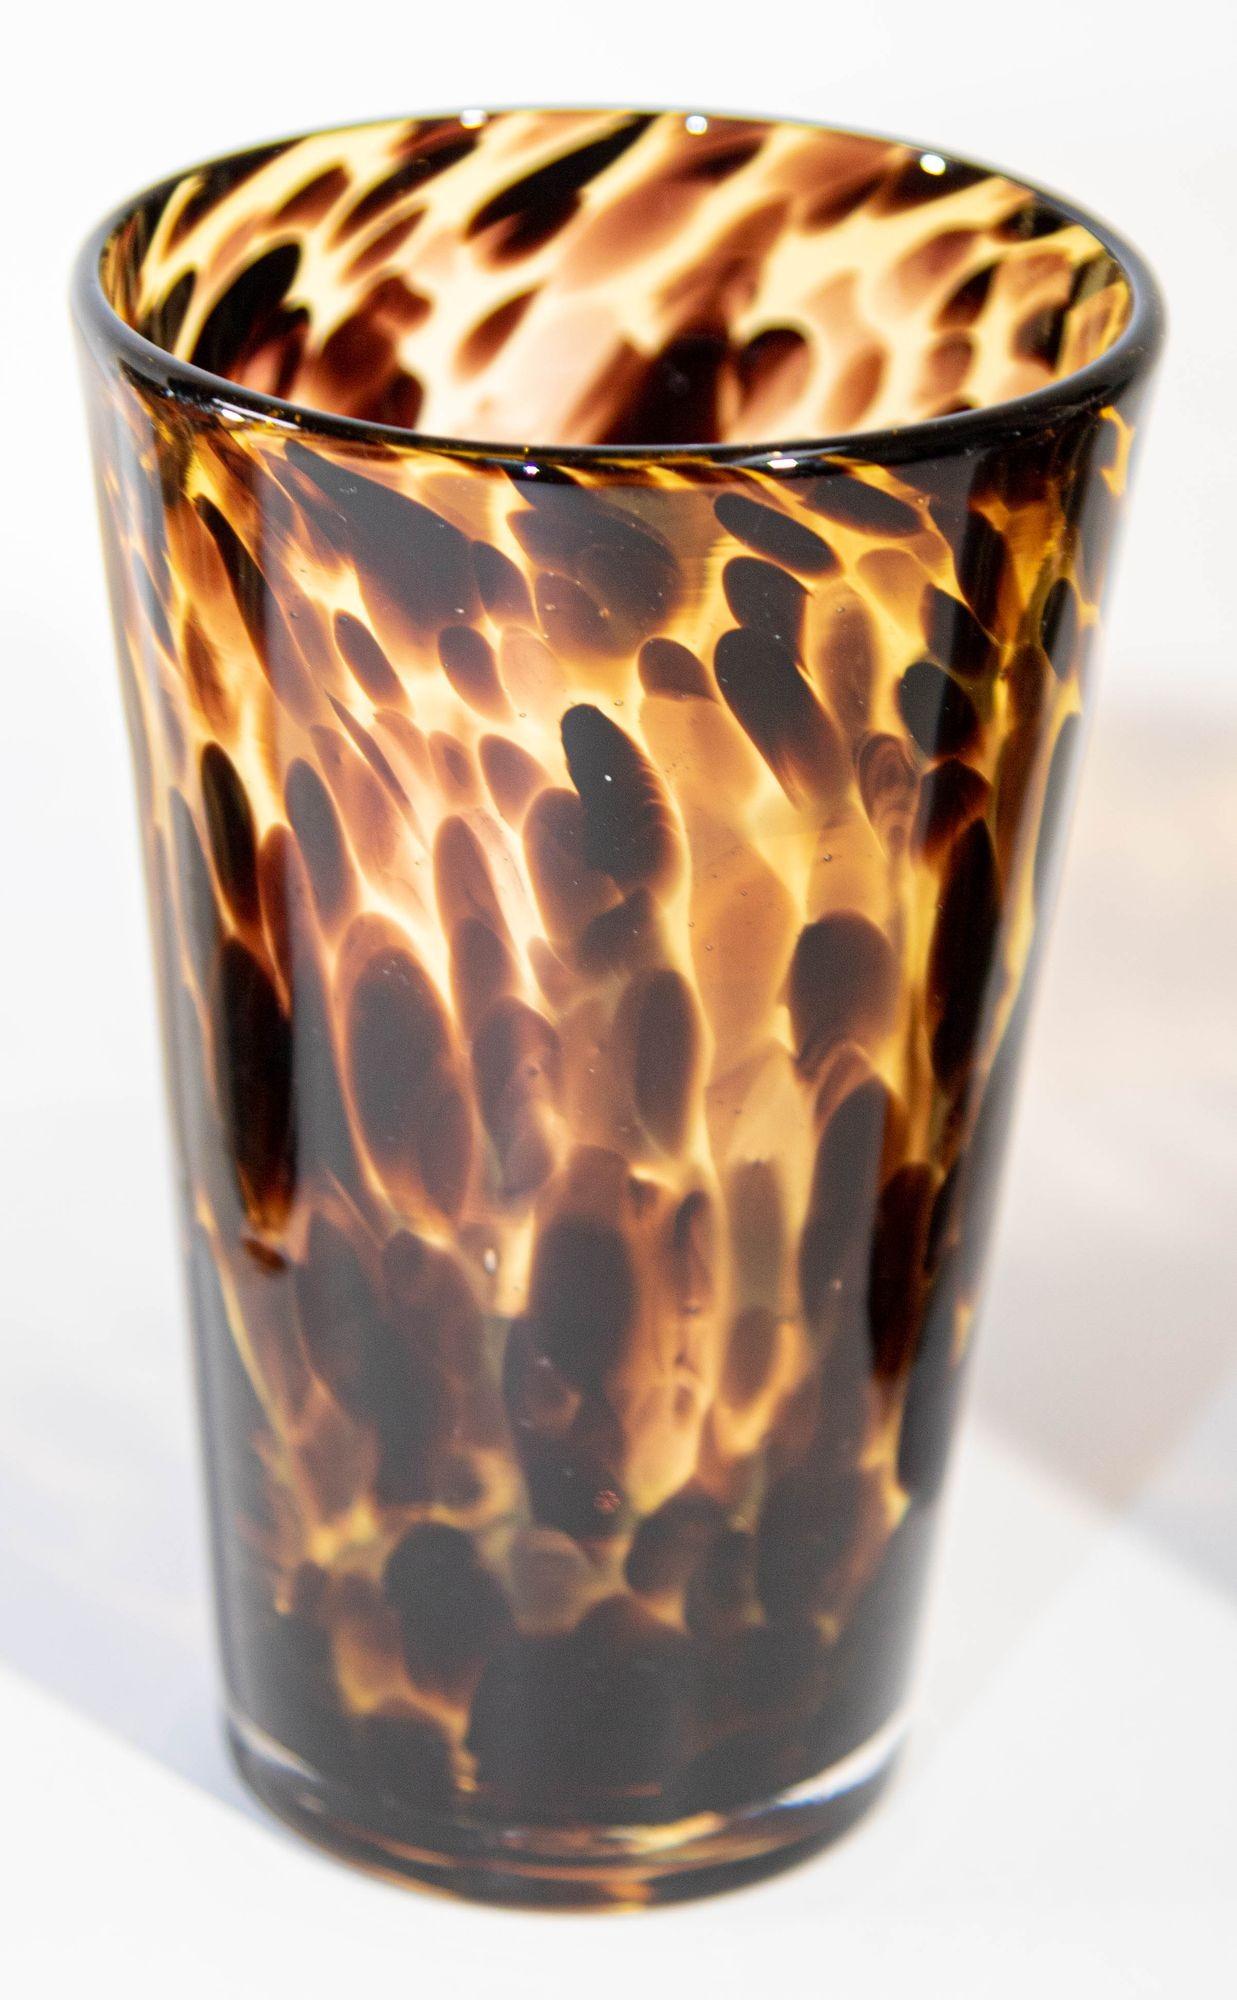 Art Glass Vintage Highball Tumbler Drinking Glasses Amber Tortoise Shell Color Set of Four